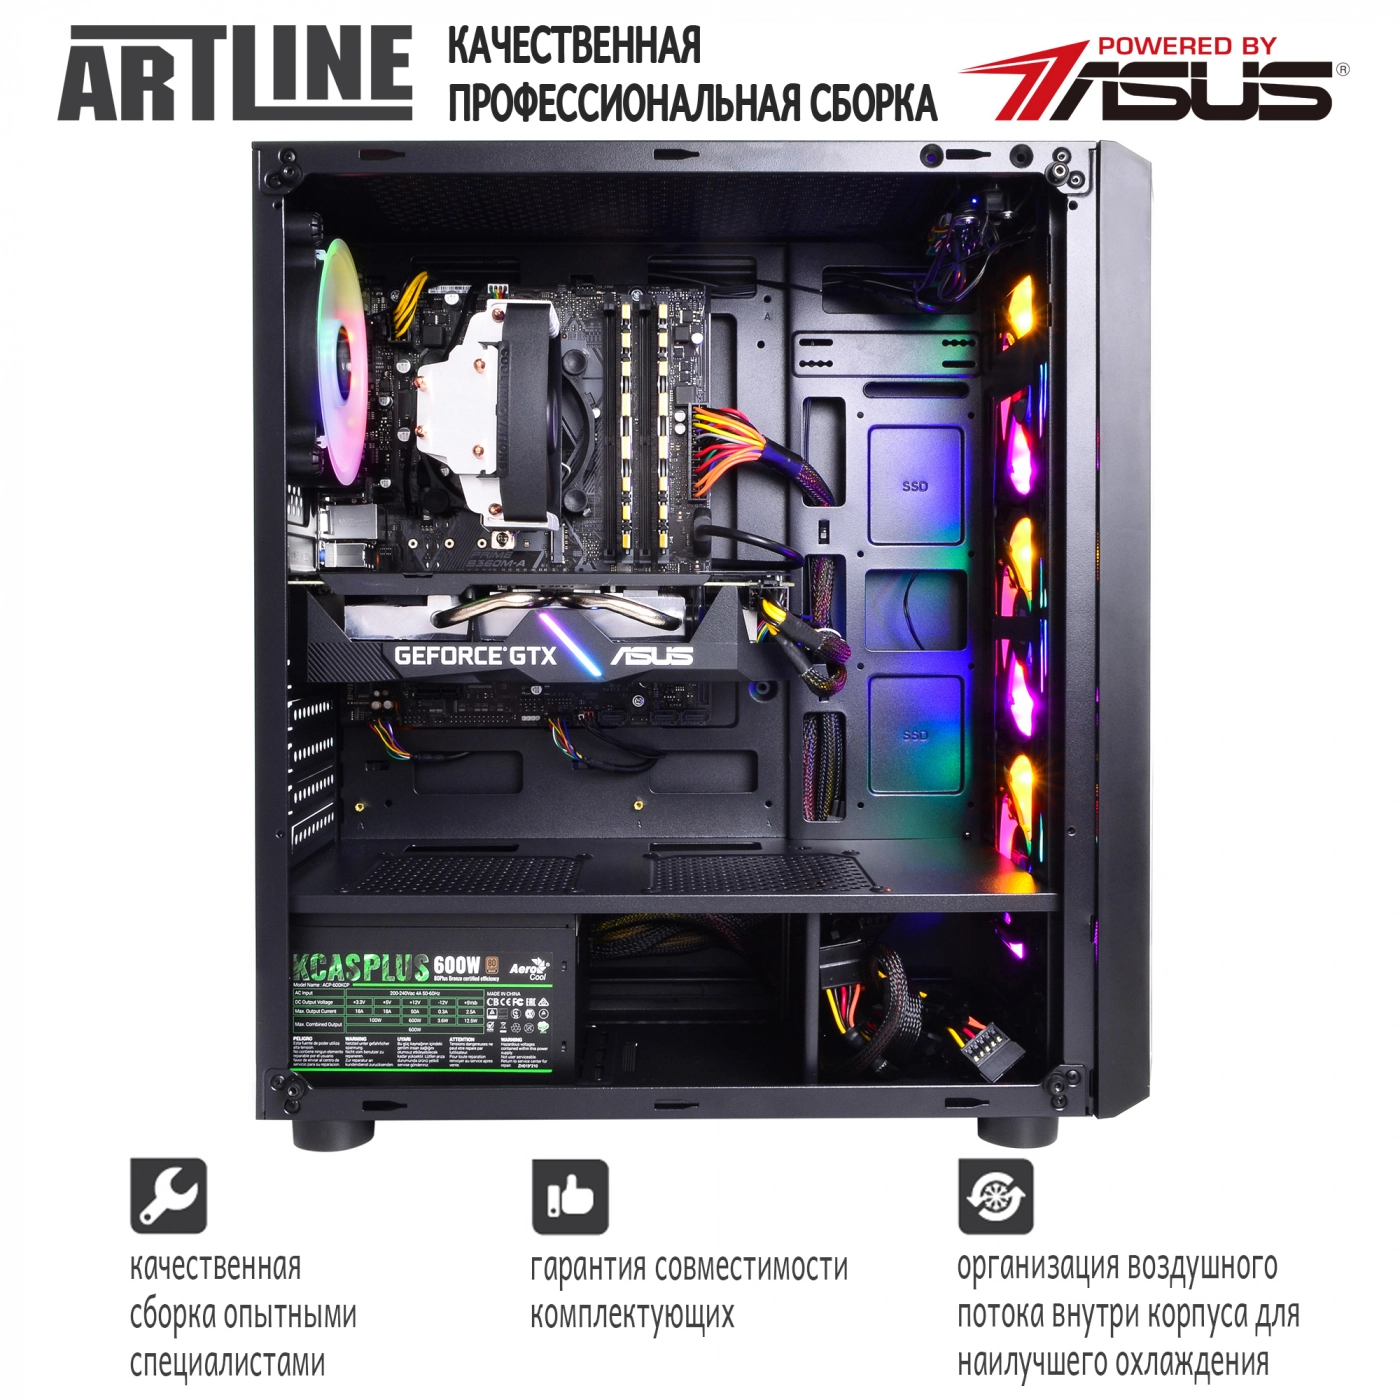 Купить Компьютер ARTLINE Gaming X35v33 - фото 9